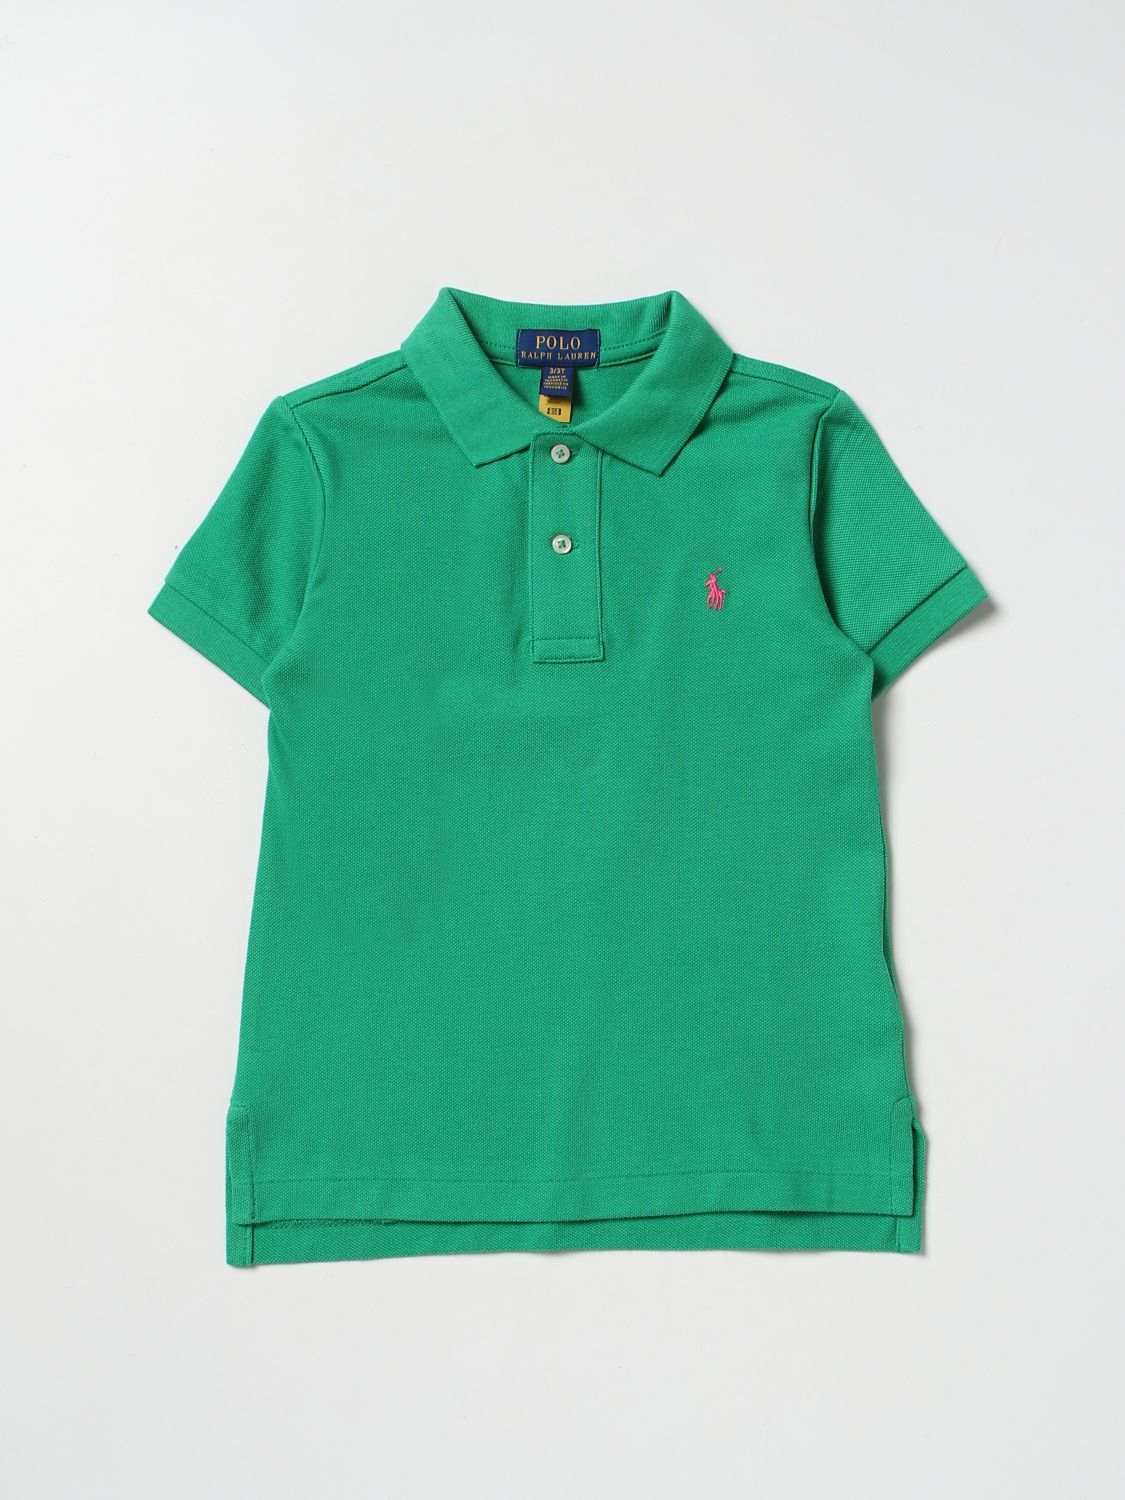 POLO RALPH LAUREN: polo shirt for boys - Green | Polo Ralph Lauren polo  shirt 321703632 online on 